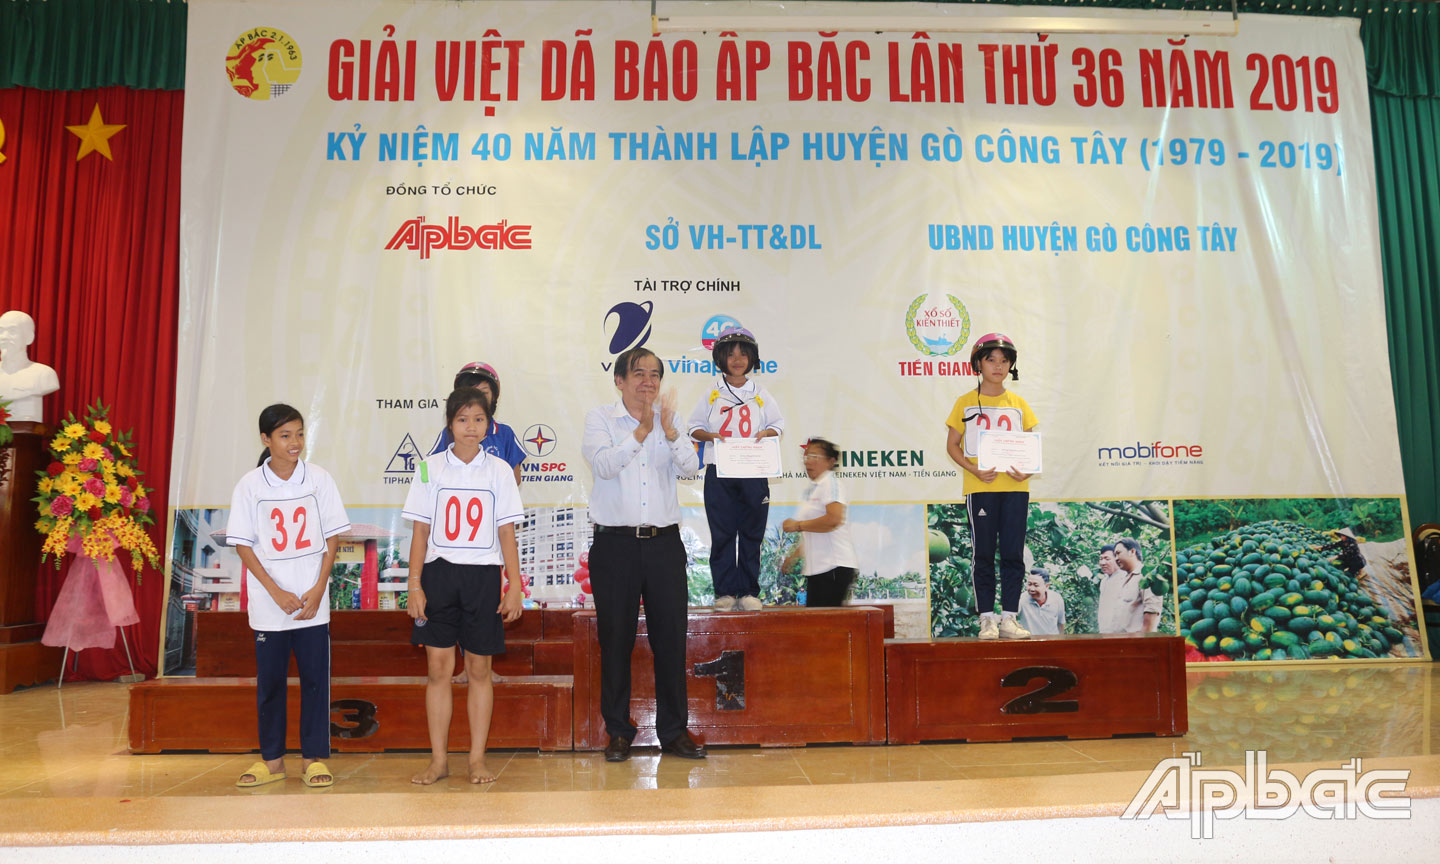 Tổng Biên tập Báo Ấp Bắc Nguyễn Minh Tân trao thưởng cho các vận động viên có thành tích cao tại Giải Việt dã Báo Ấp Bắc lần thứ 36 năm 2019.